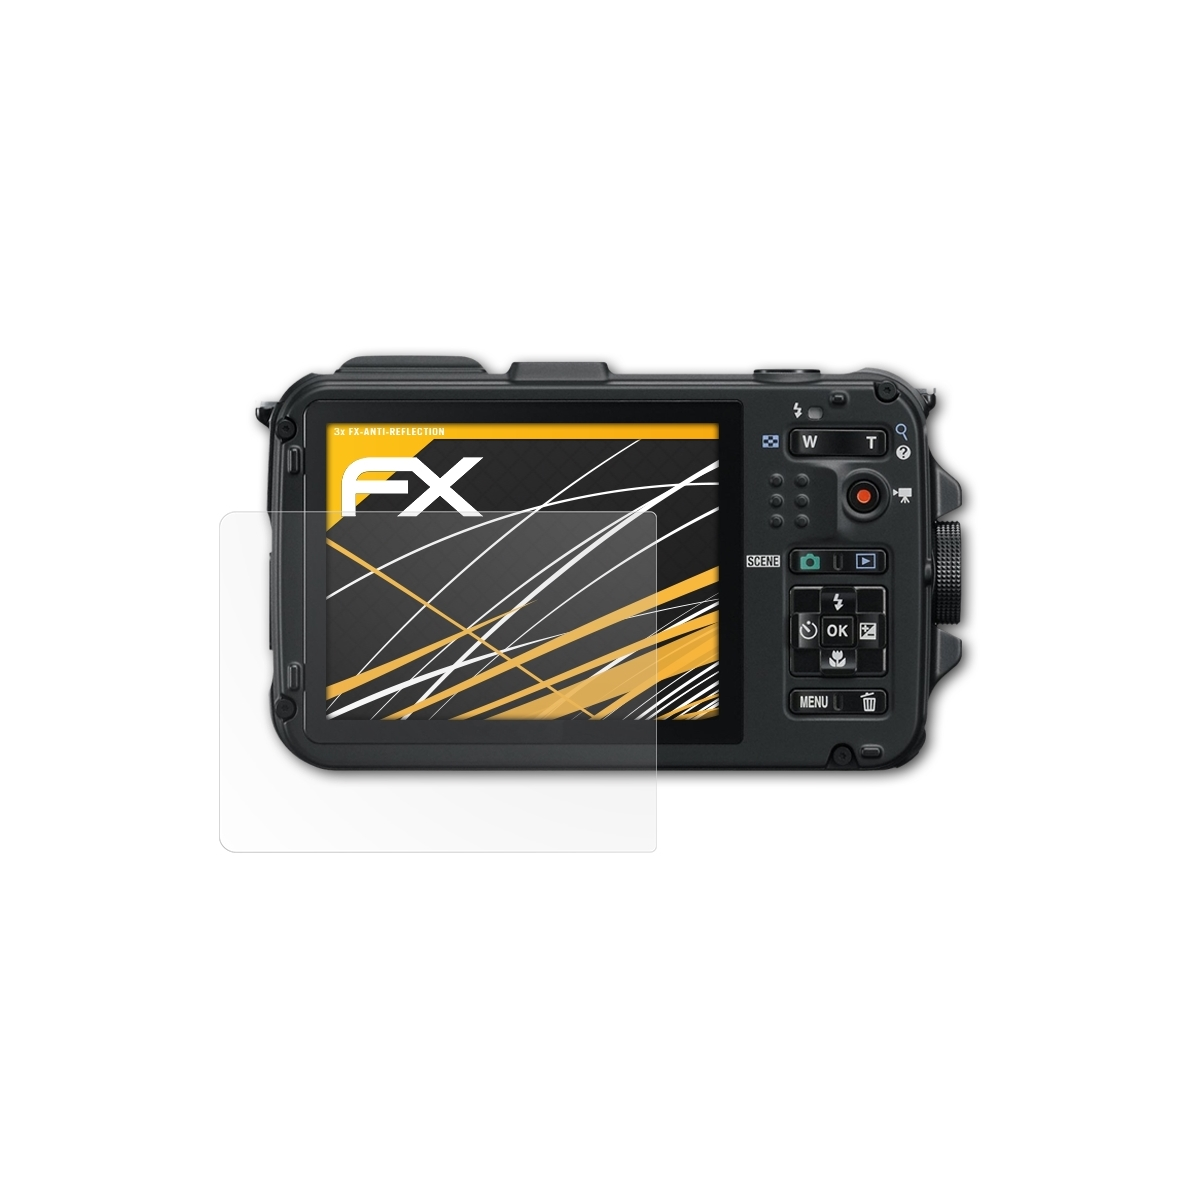 3x ATFOLIX Displayschutz(für FX-Antireflex Nikon AW100) Coolpix